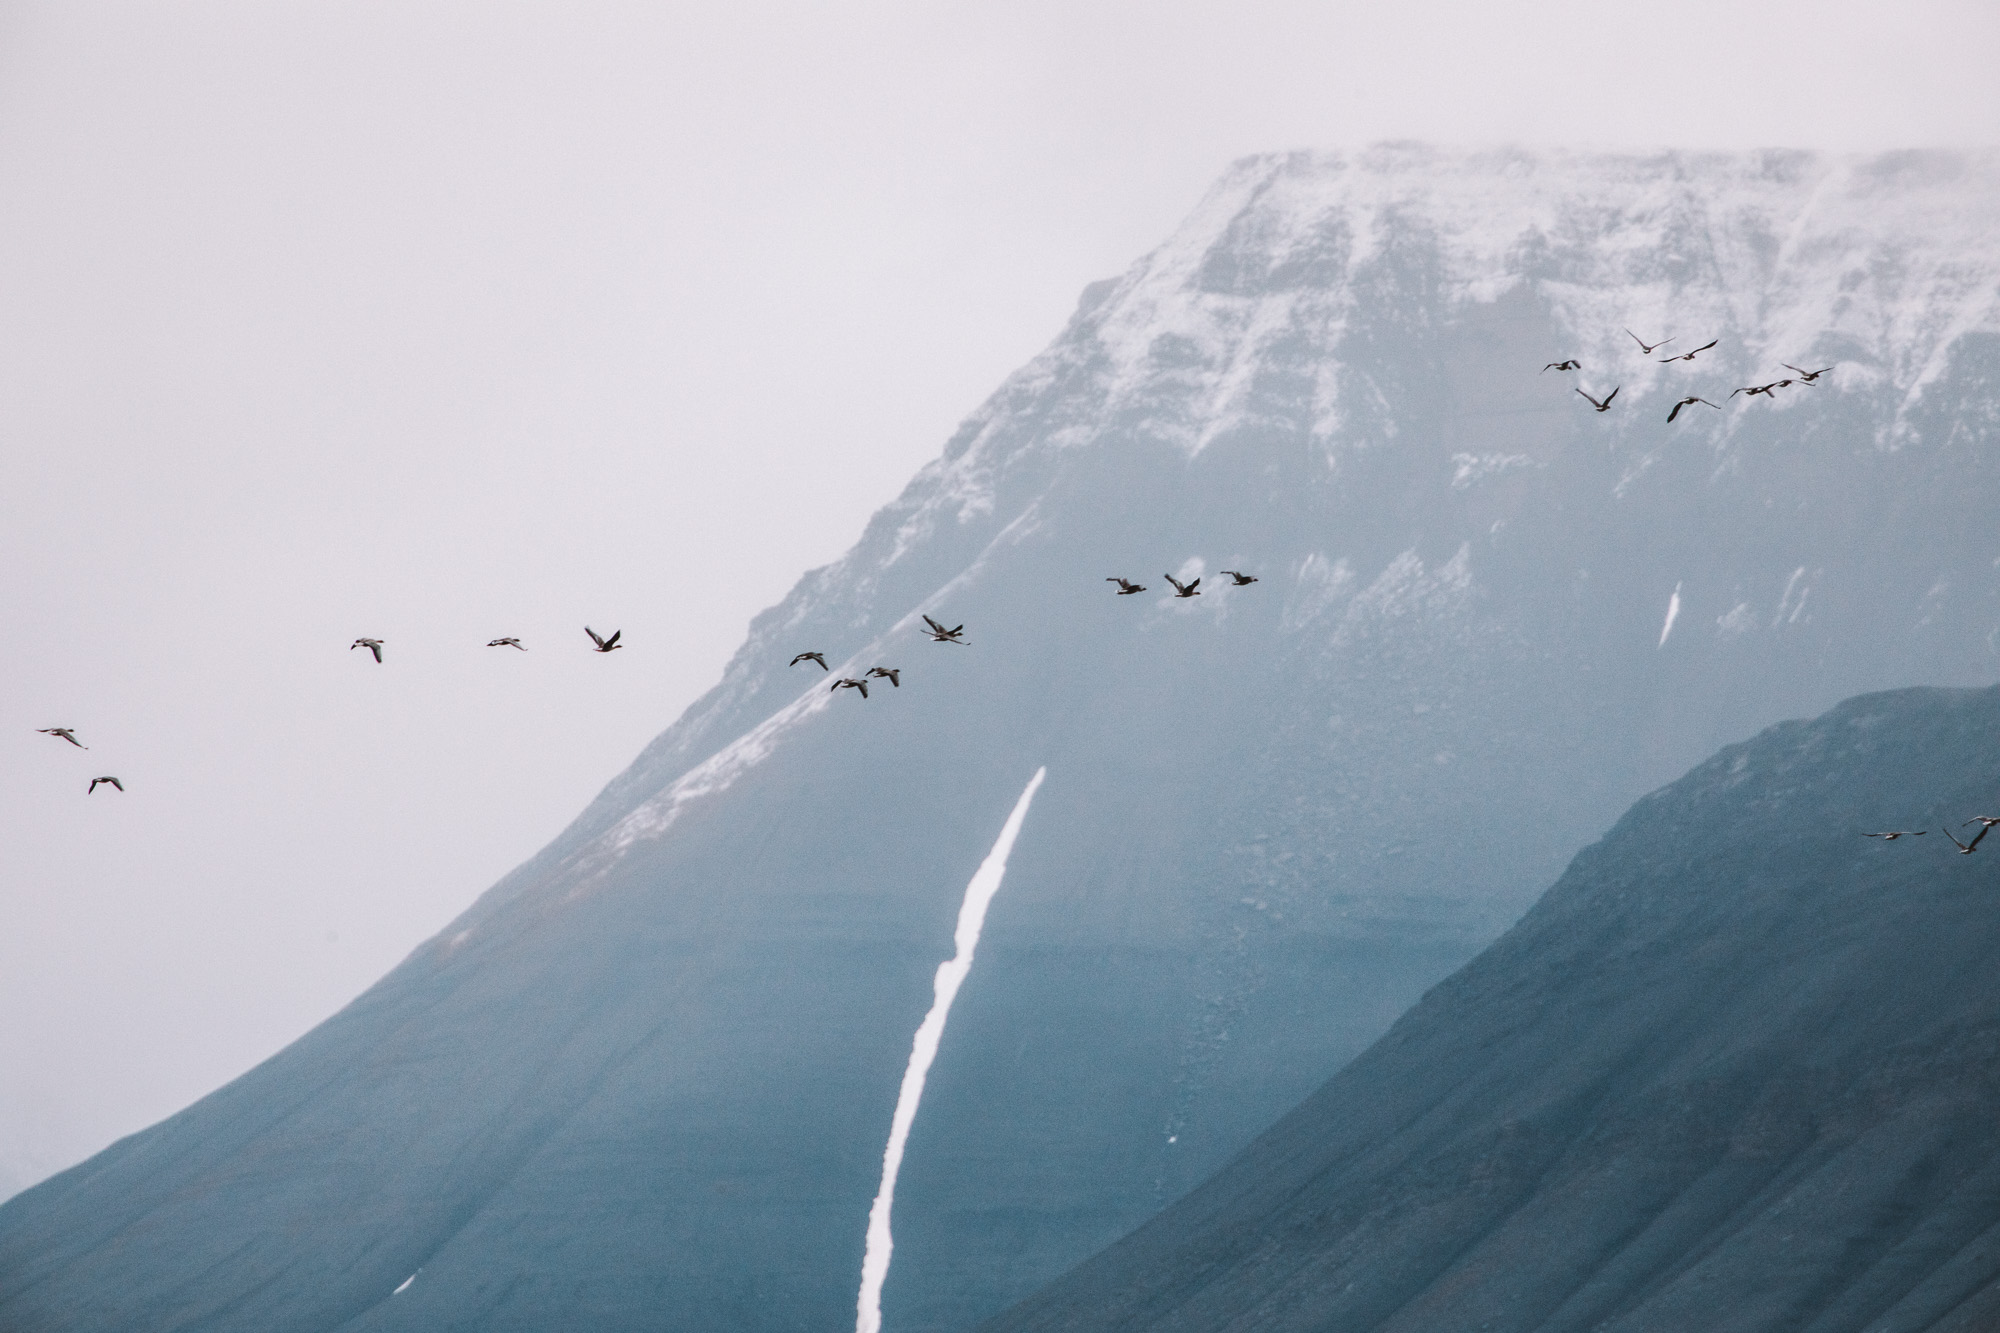 Birds and mountains in Svalbard, Spitsbergen, Norway